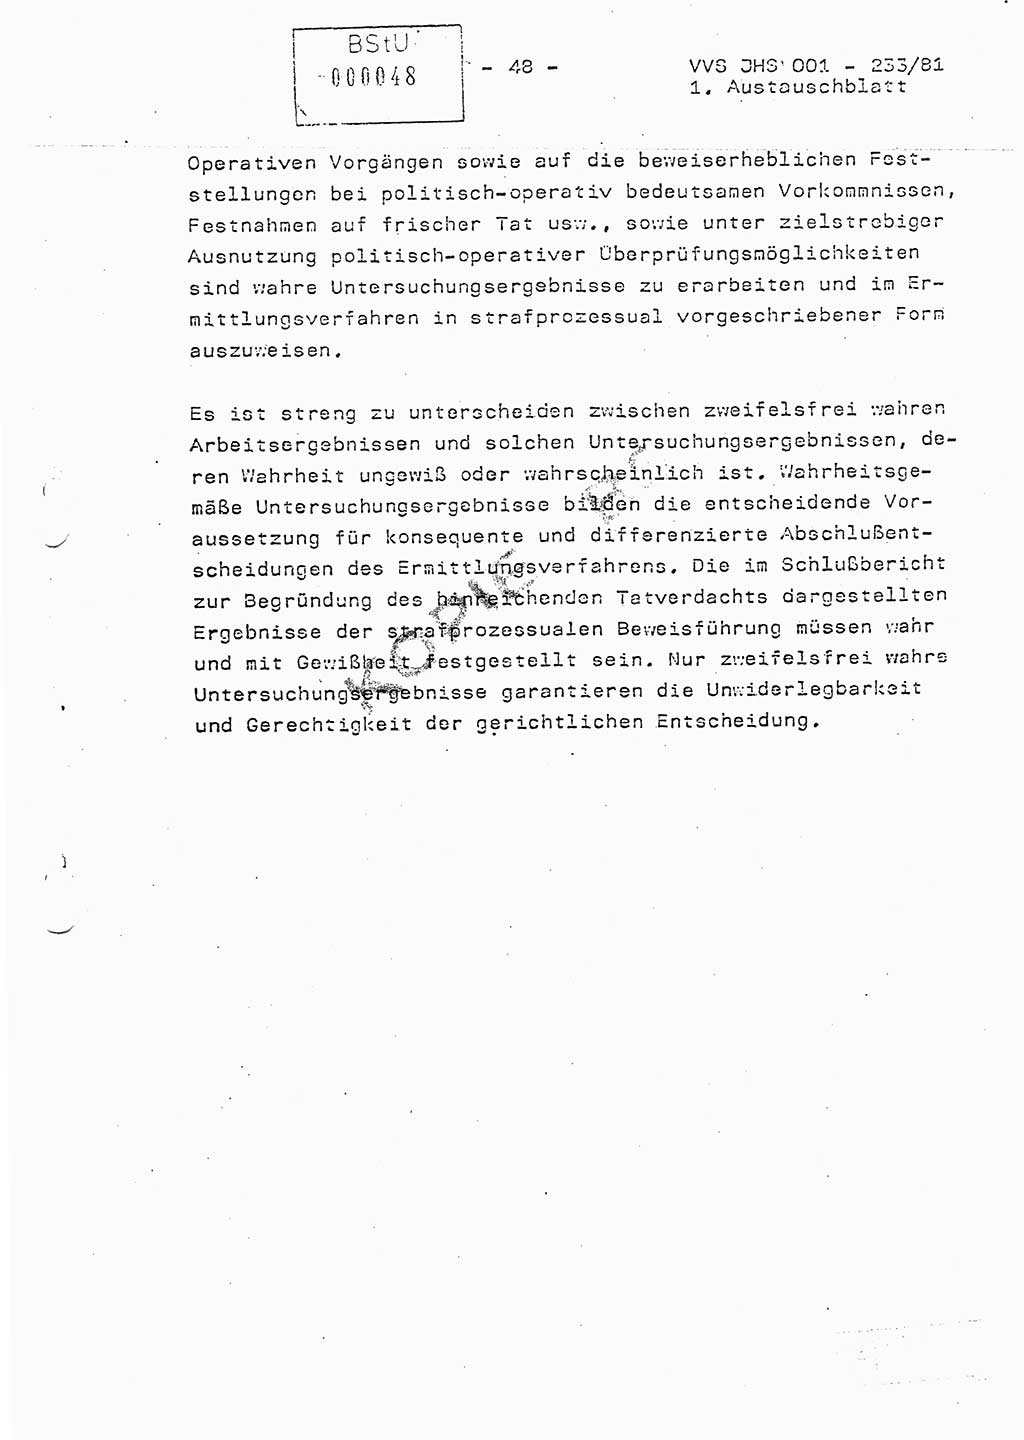 Dissertation Oberstleutnant Horst Zank (JHS), Oberstleutnant Dr. Karl-Heinz Knoblauch (JHS), Oberstleutnant Gustav-Adolf Kowalewski (HA Ⅸ), Oberstleutnant Wolfgang Plötner (HA Ⅸ), Ministerium für Staatssicherheit (MfS) [Deutsche Demokratische Republik (DDR)], Juristische Hochschule (JHS), Vertrauliche Verschlußsache (VVS) o001-233/81, Potsdam 1981, Blatt 48 (Diss. MfS DDR JHS VVS o001-233/81 1981, Bl. 48)